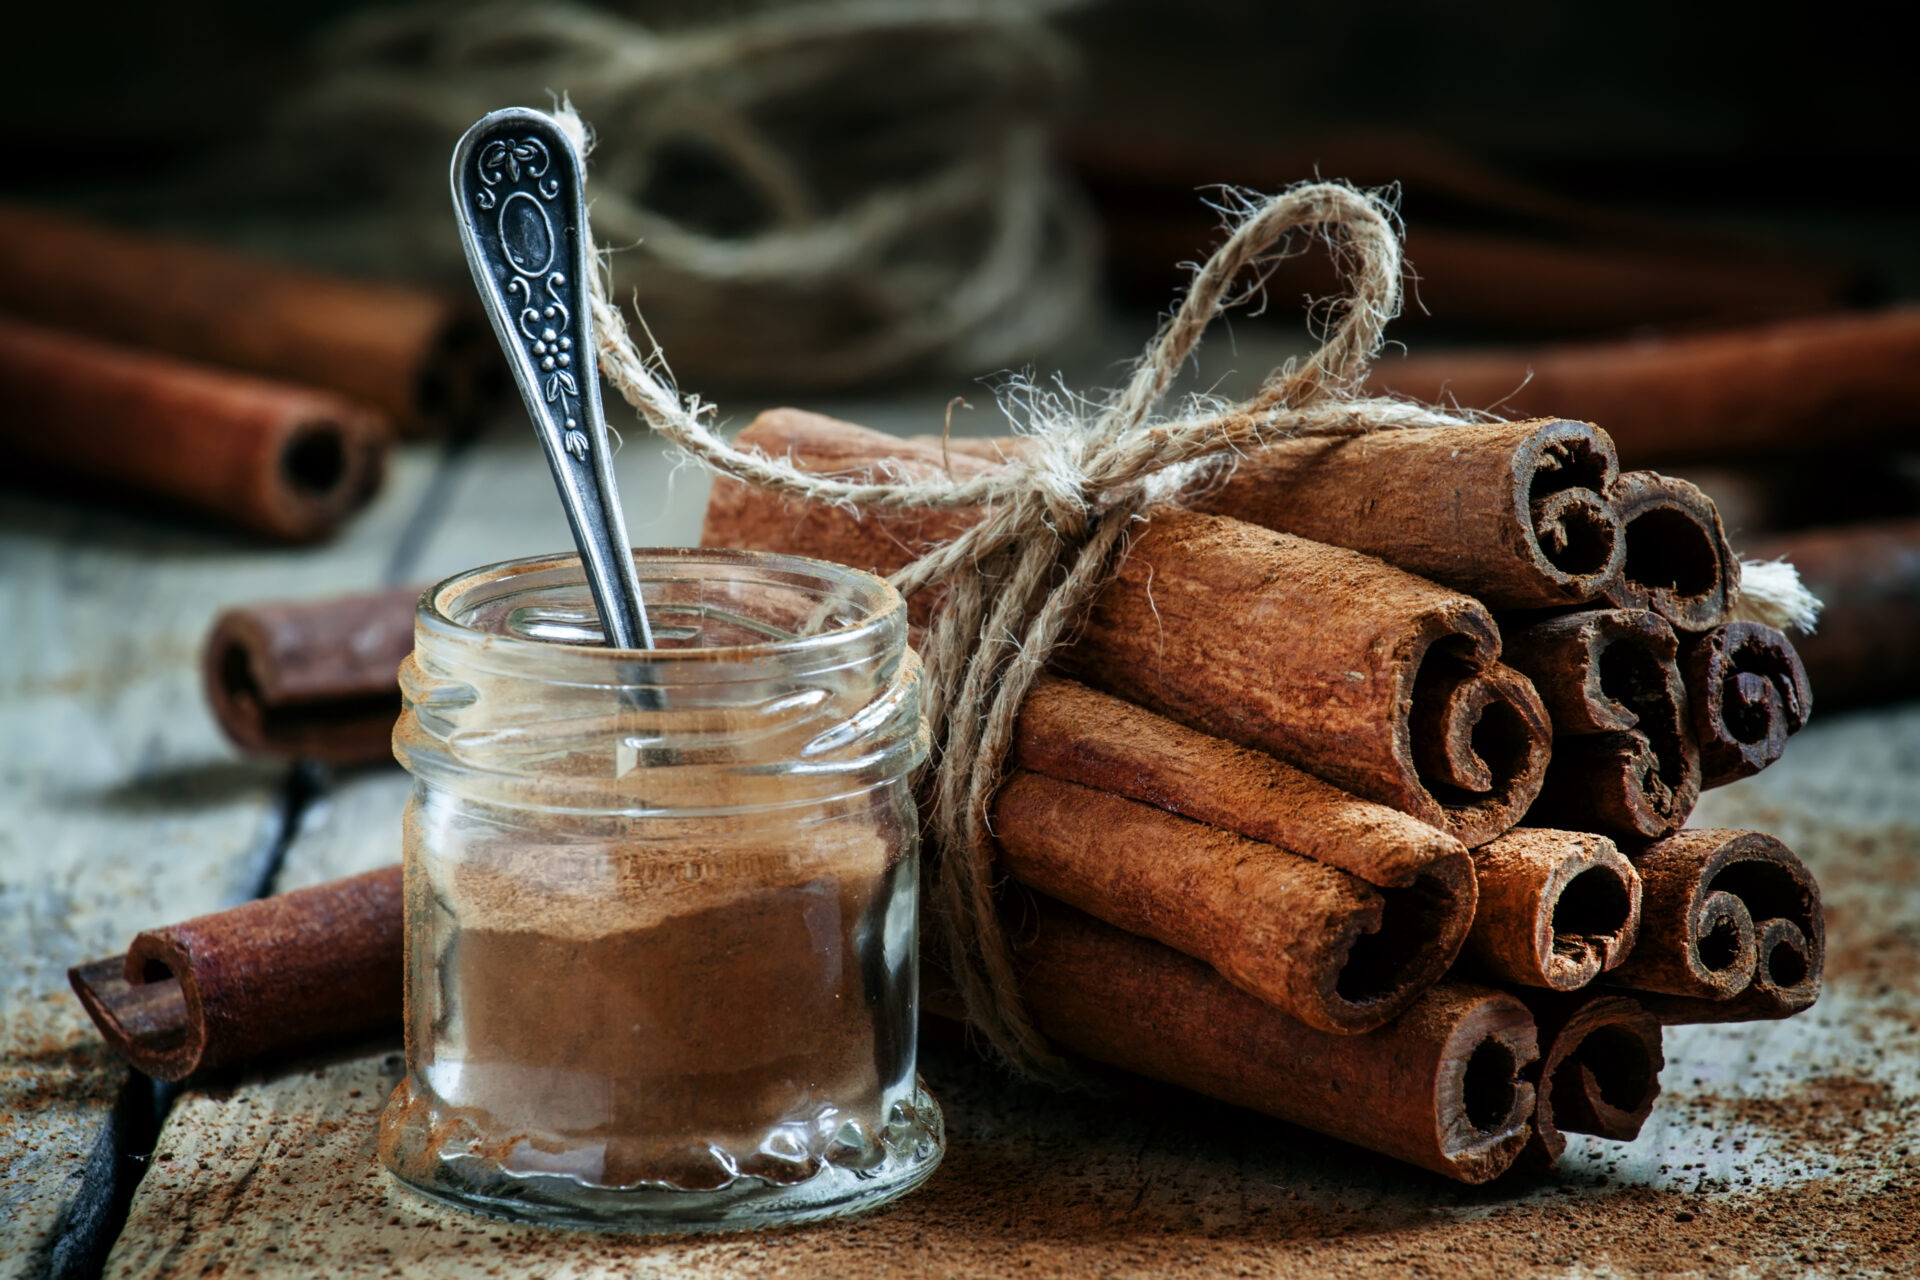 Magical properties of cinnamon